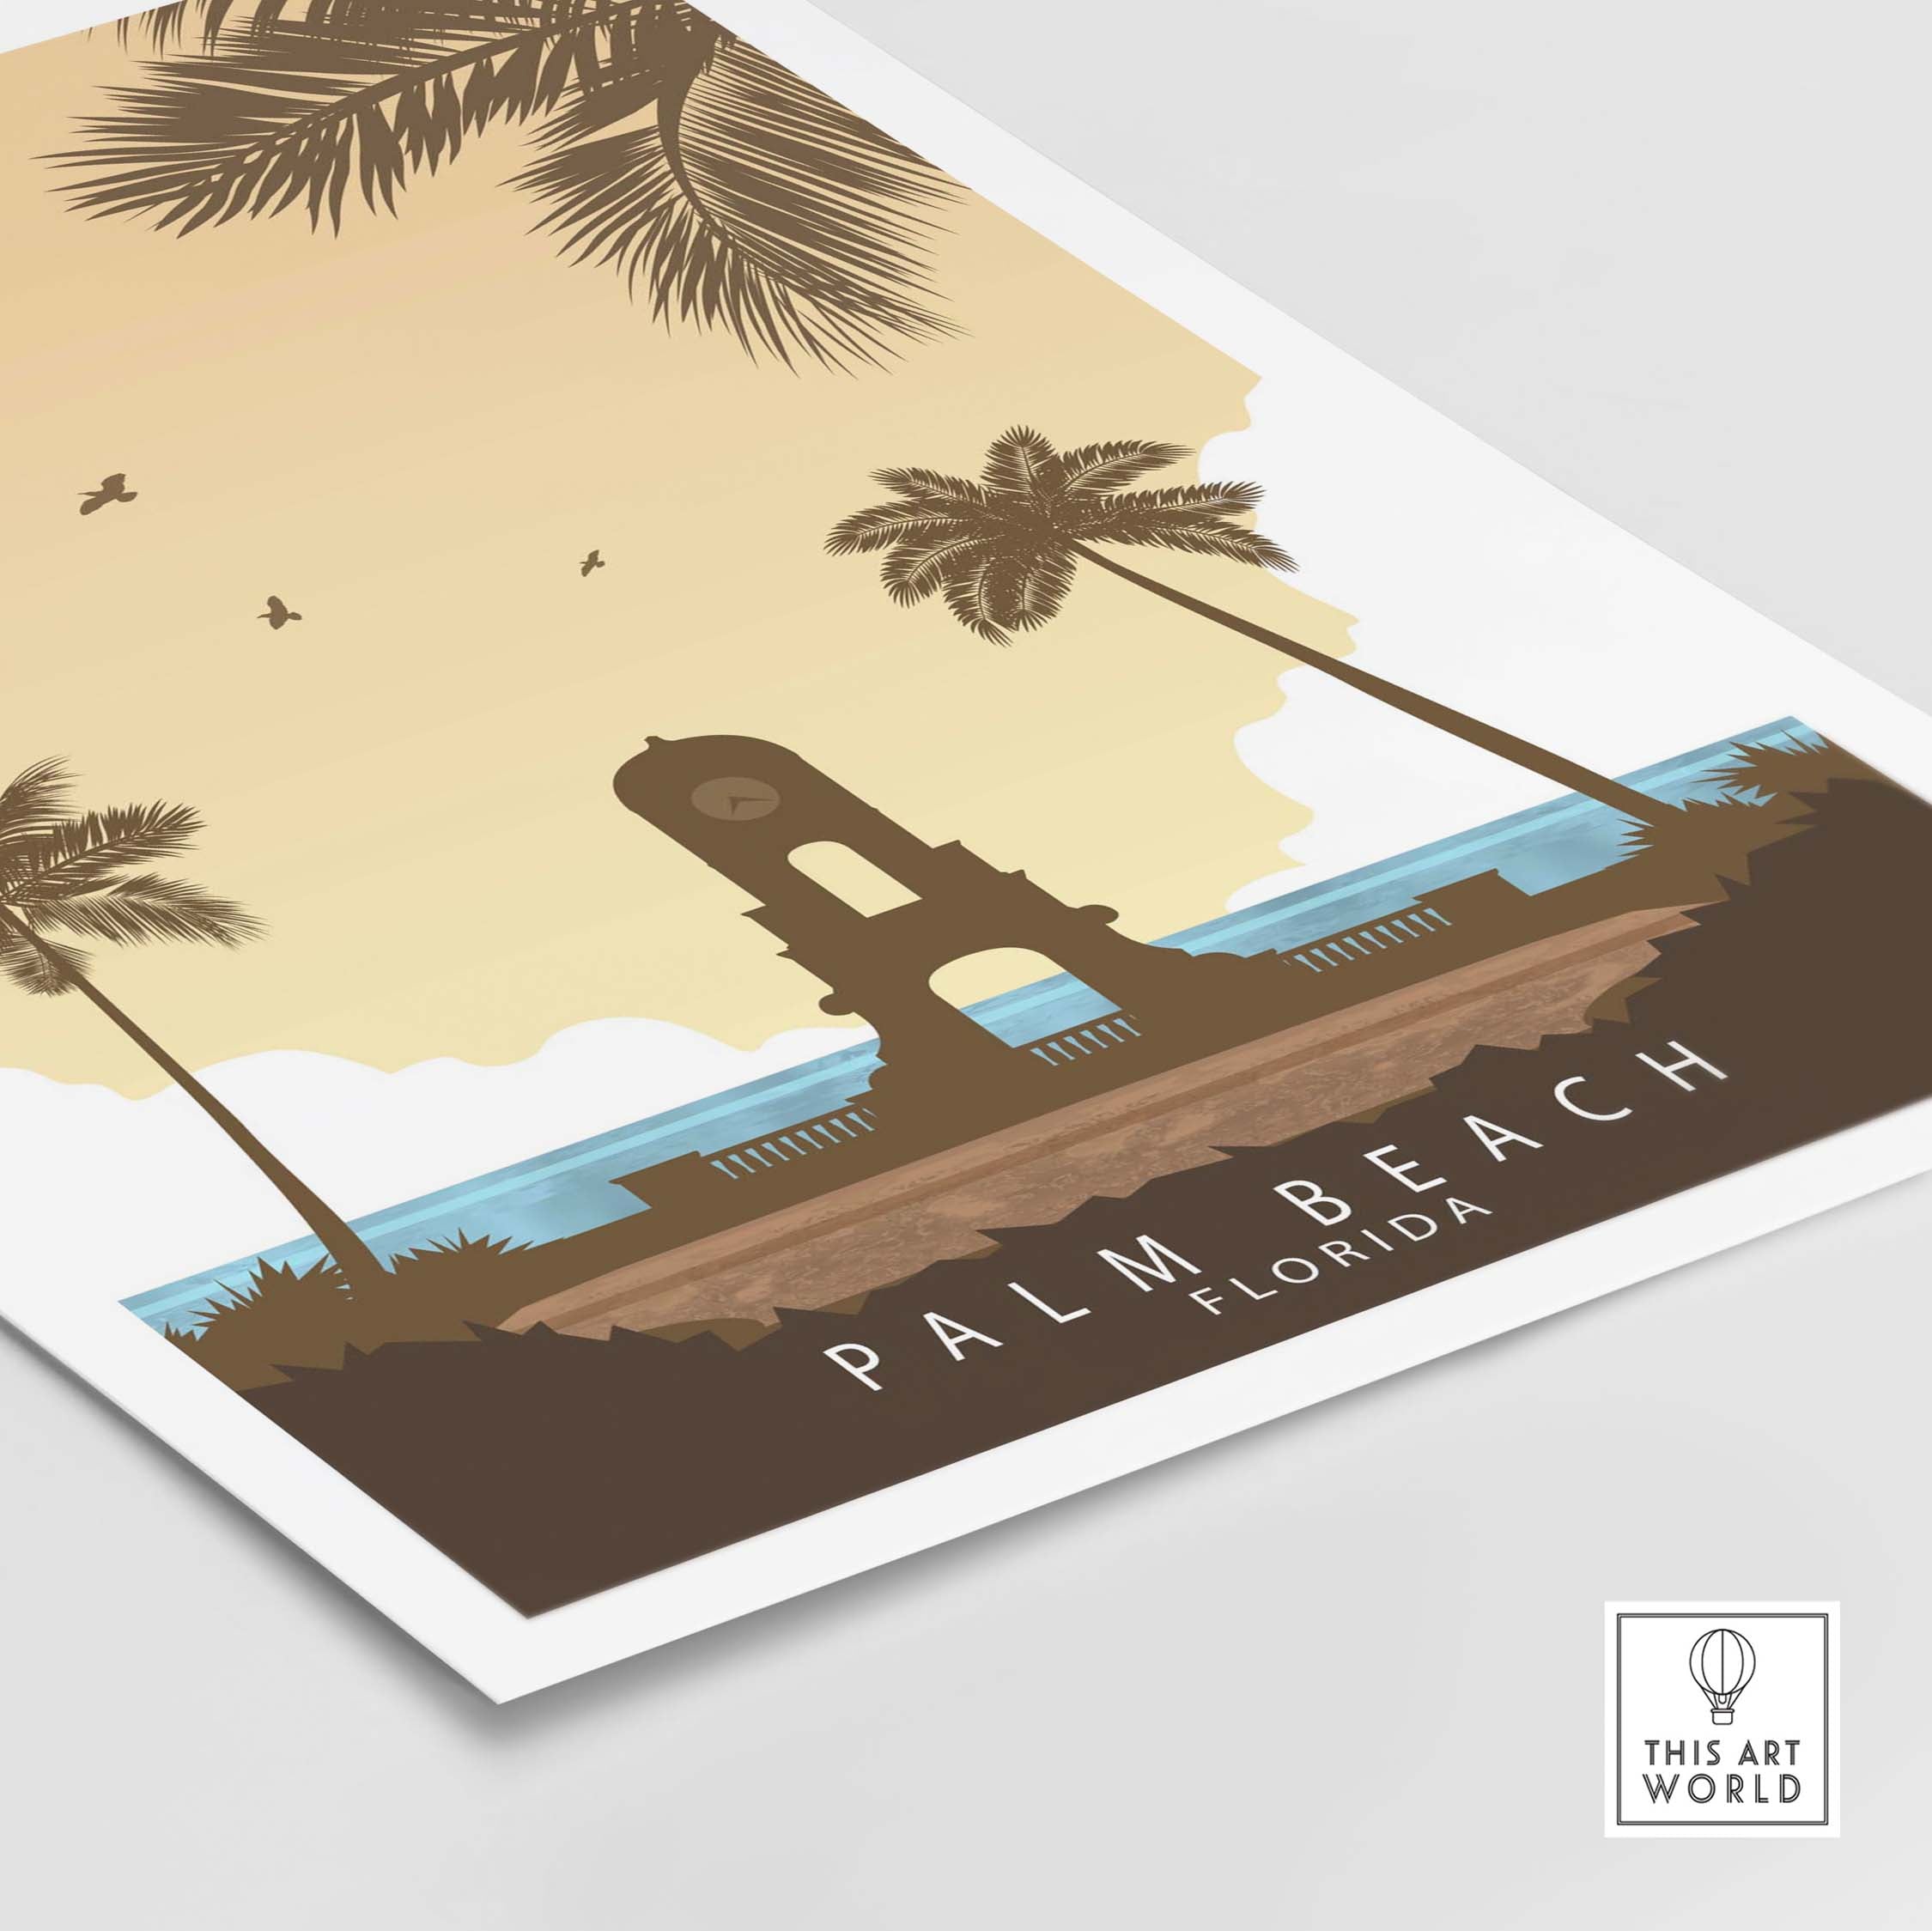 palm beach florida print